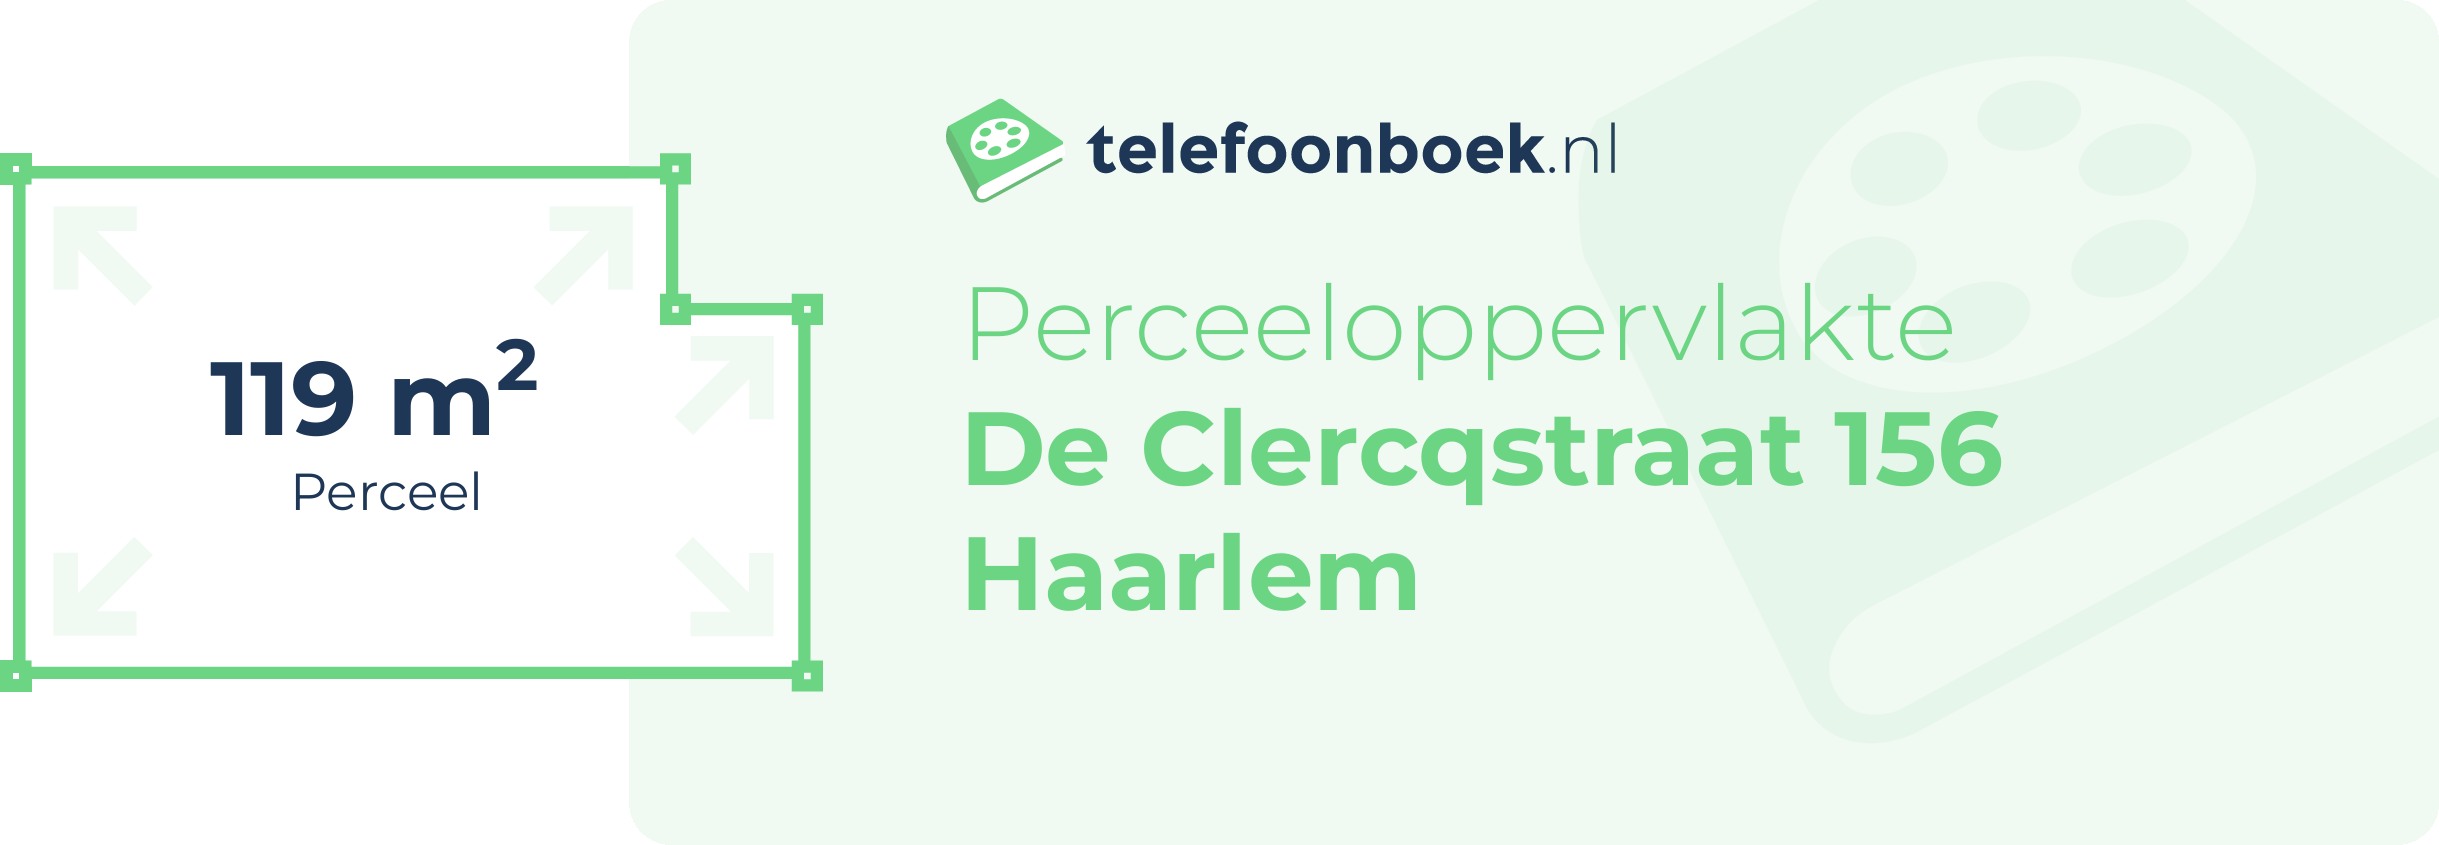 Perceeloppervlakte De Clercqstraat 156 Haarlem